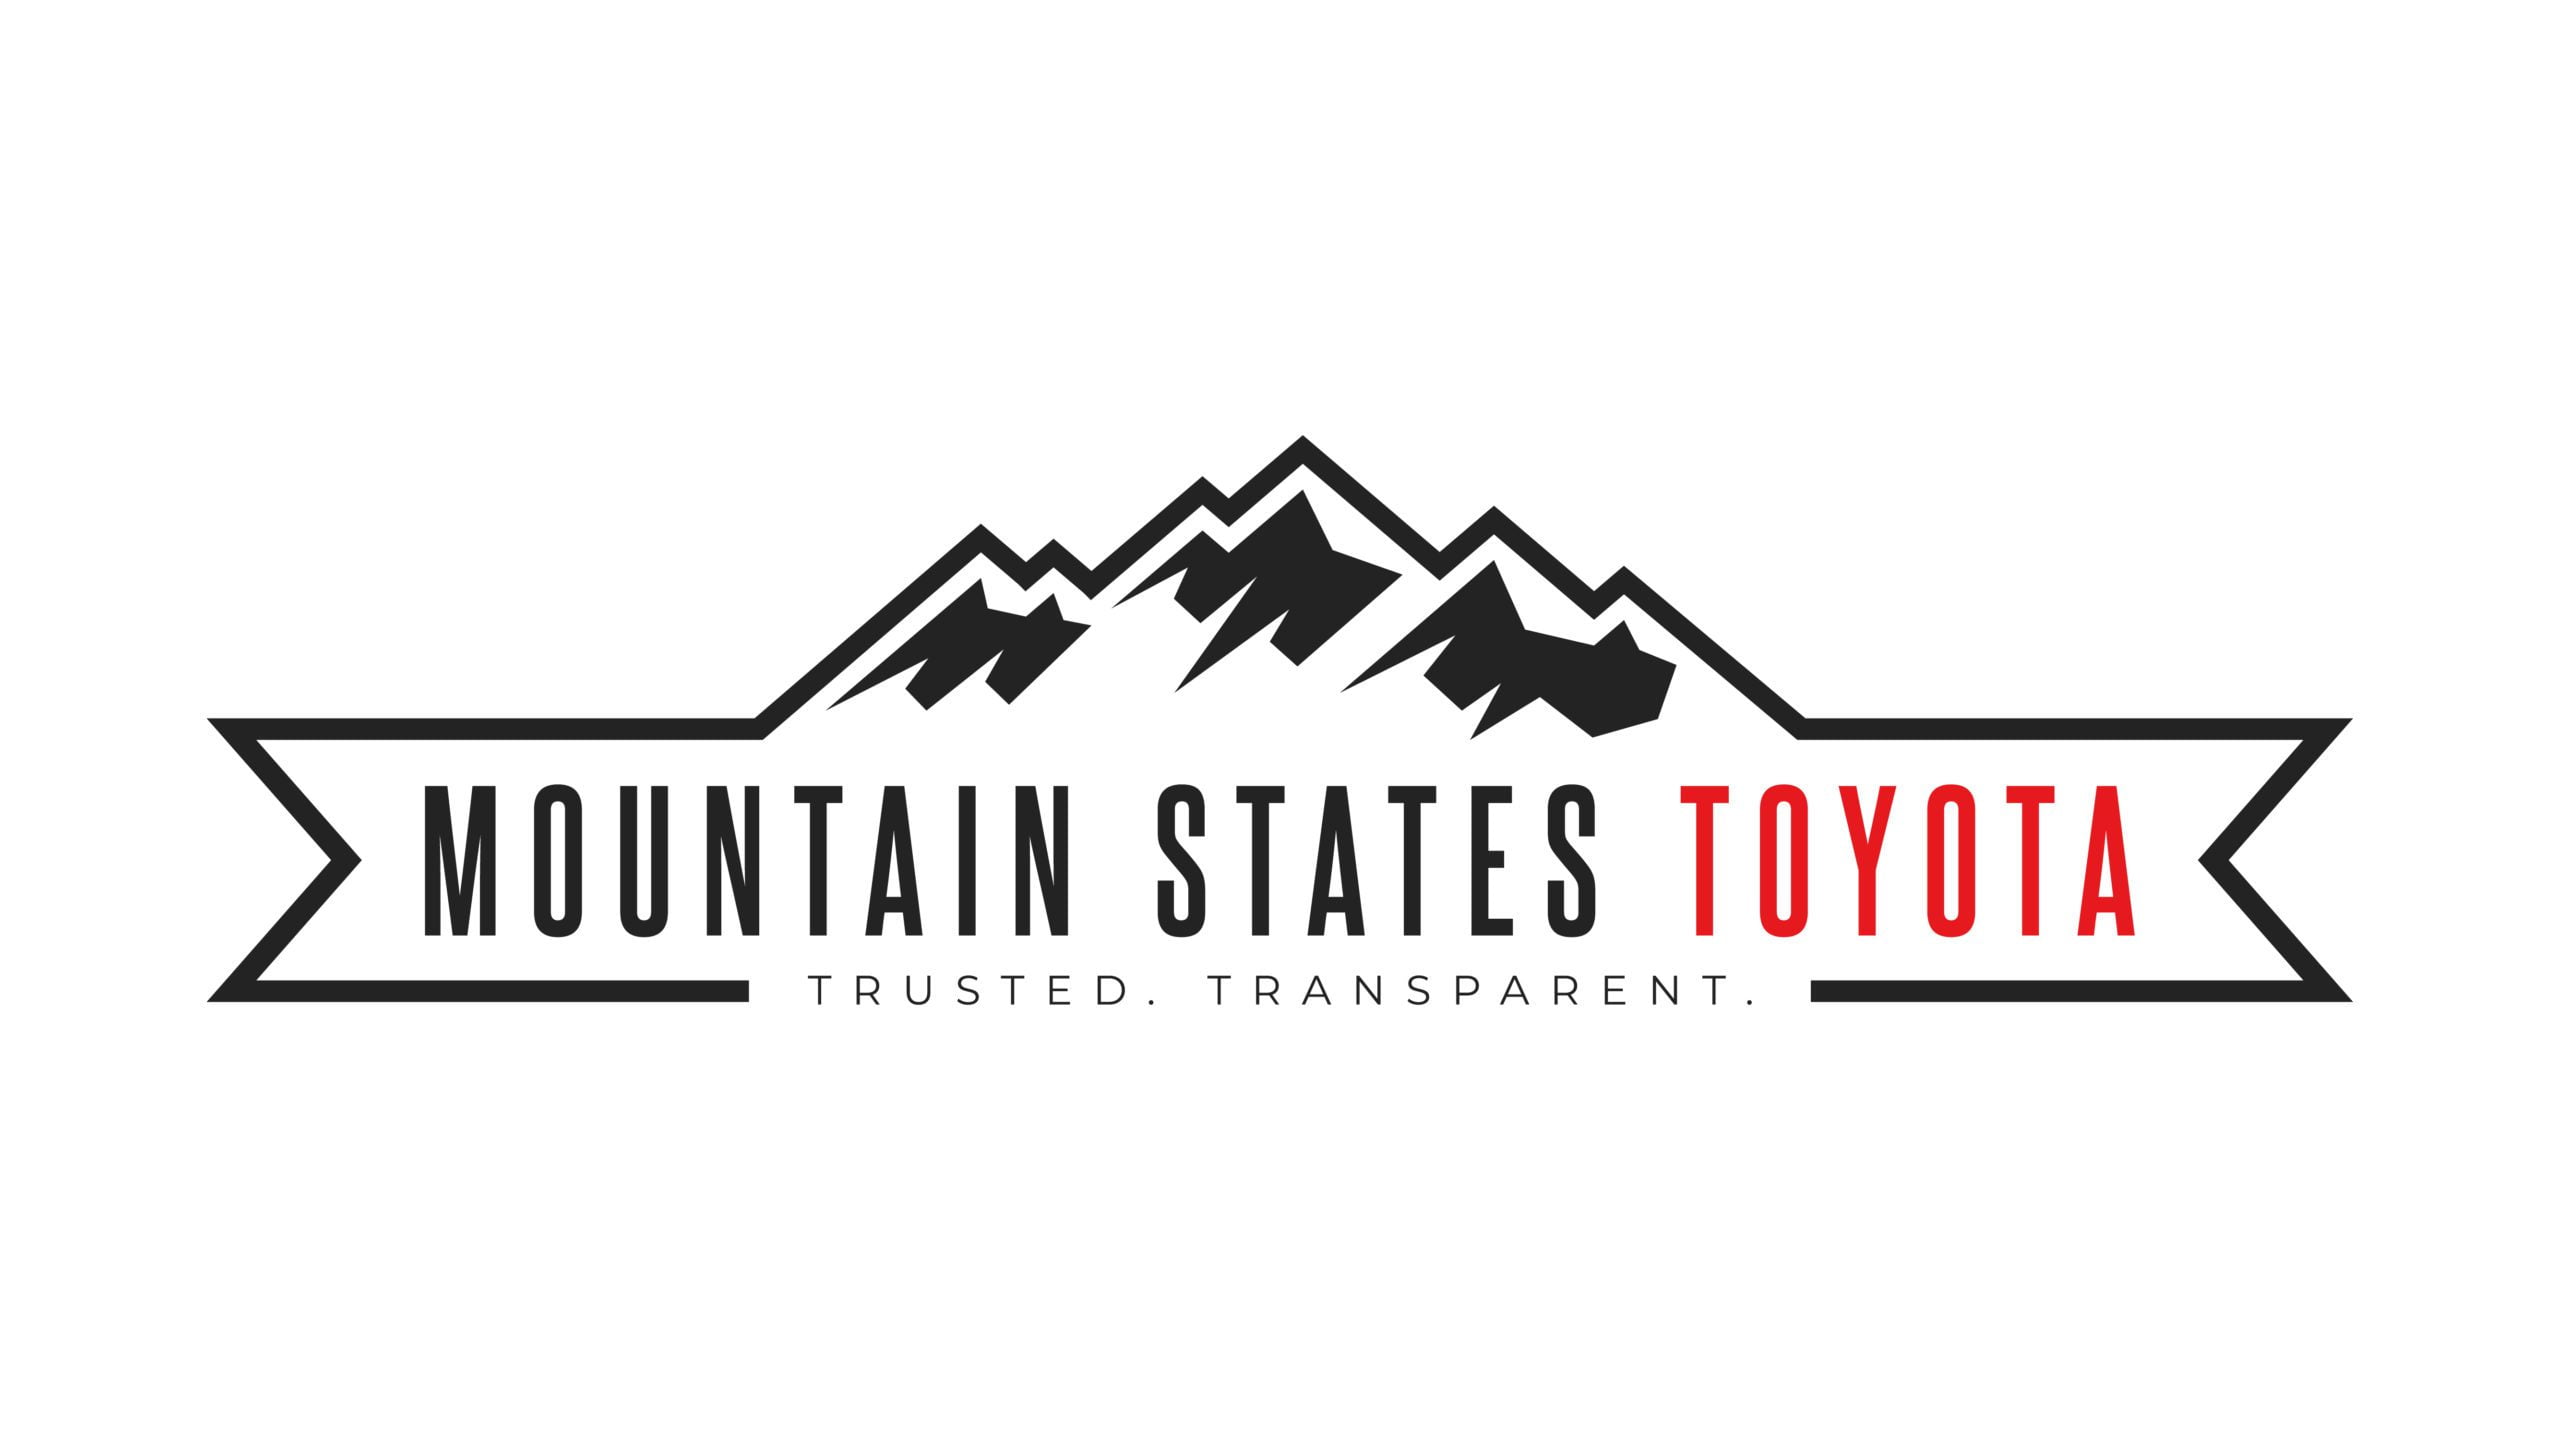 Mountain States Toyota-Black on WhiteBG-LOGO